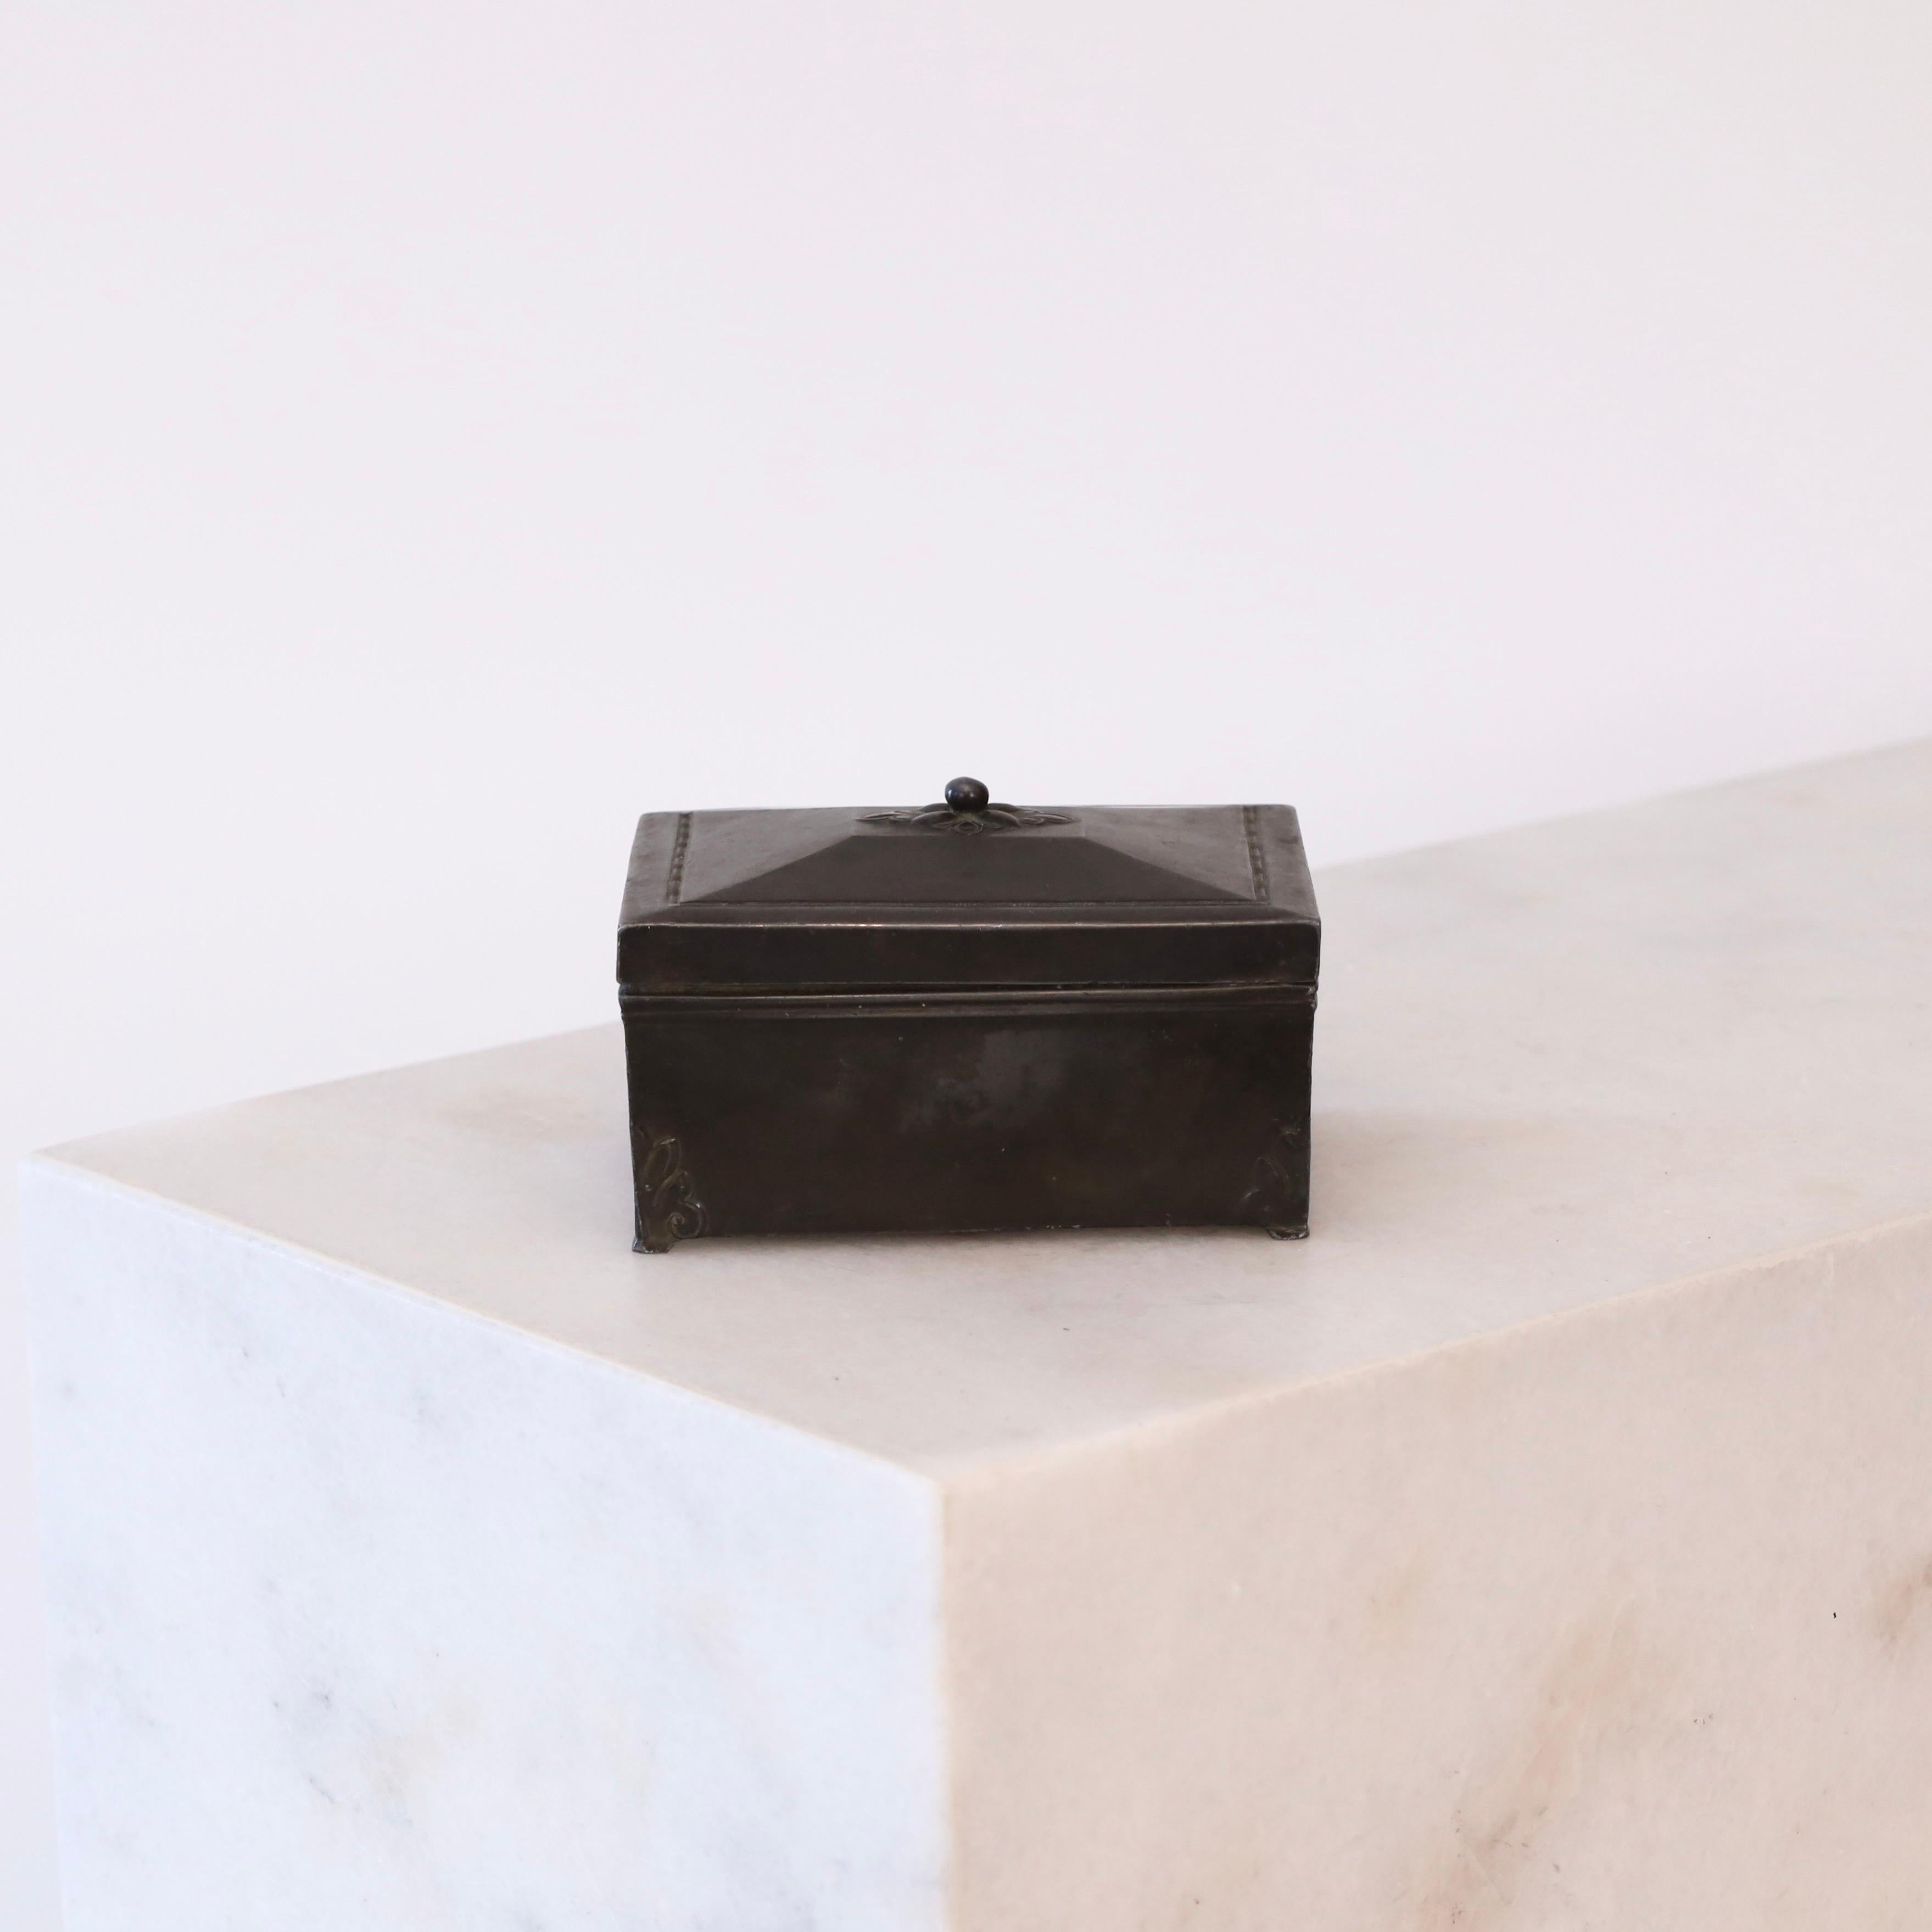 Cercueil métallique à couvercle fabriqué par Just Andersen dans les années 1920. Il s'agit d'une première œuvre du designer danois et d'une pièce intemporelle pour une belle maison. 

* Un coffret métallique / boîte à bijoux avec un intérieur en